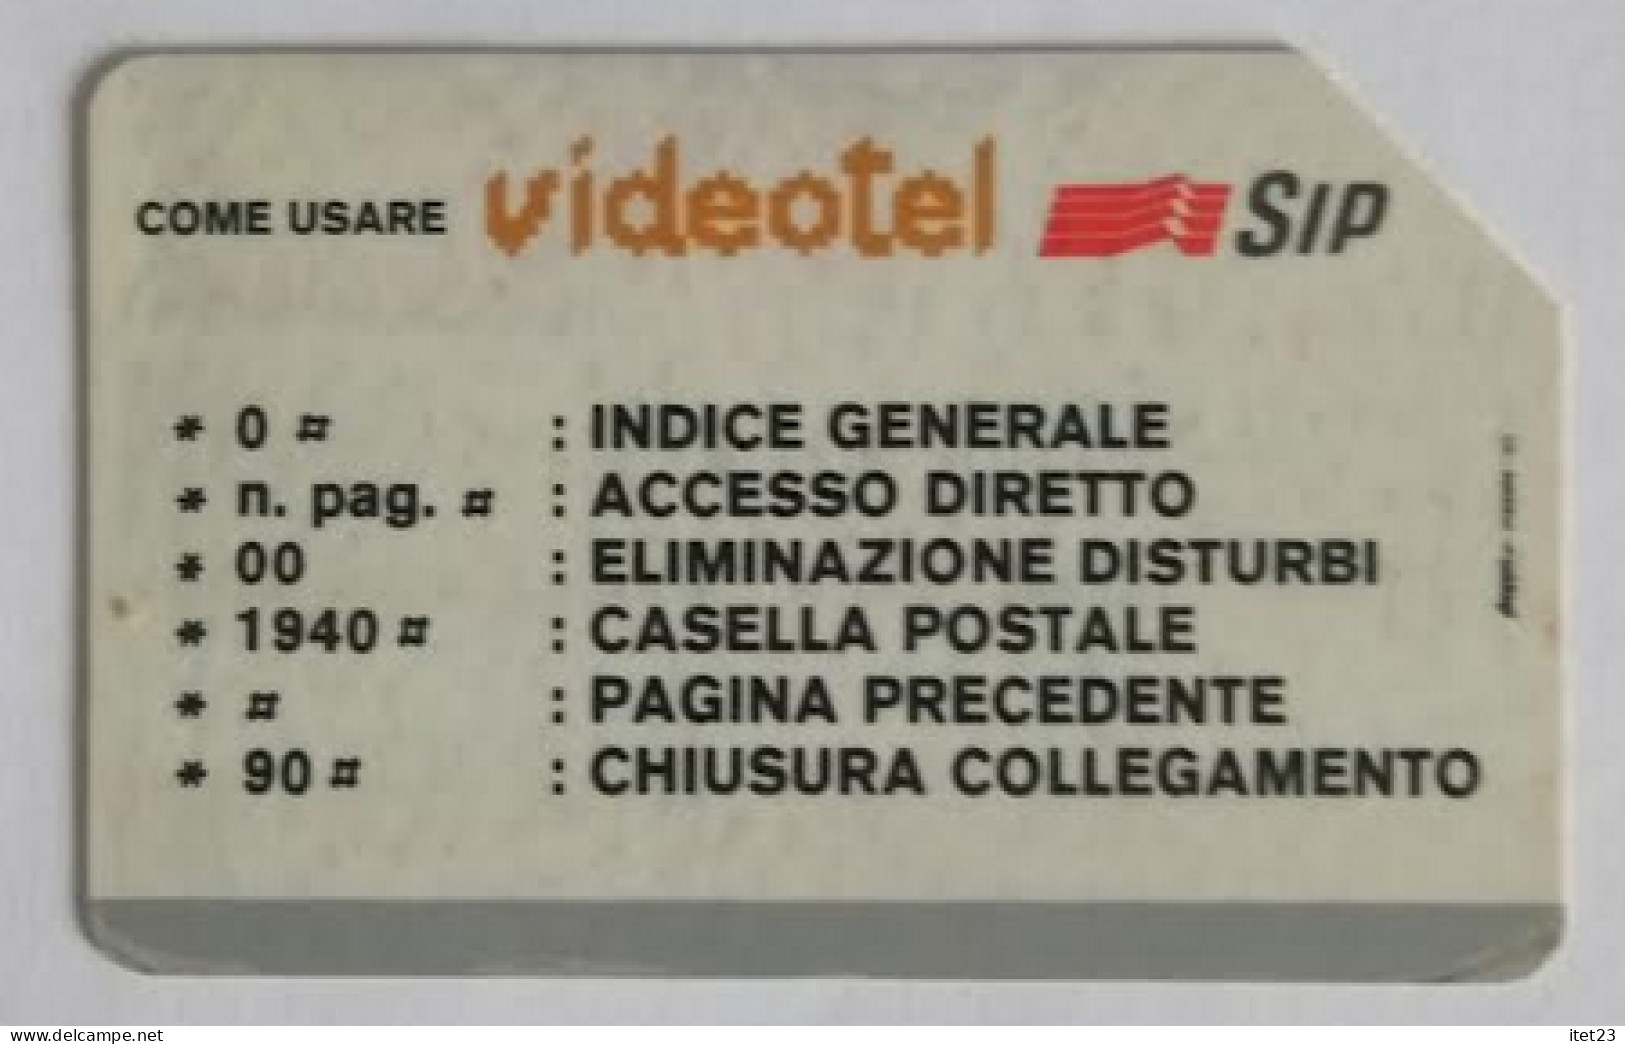 SCHEDA TELEFONICA ITALIANA - USI SPECIALI  VIDEOTEL SIP- C&C 4009 - Collezioni